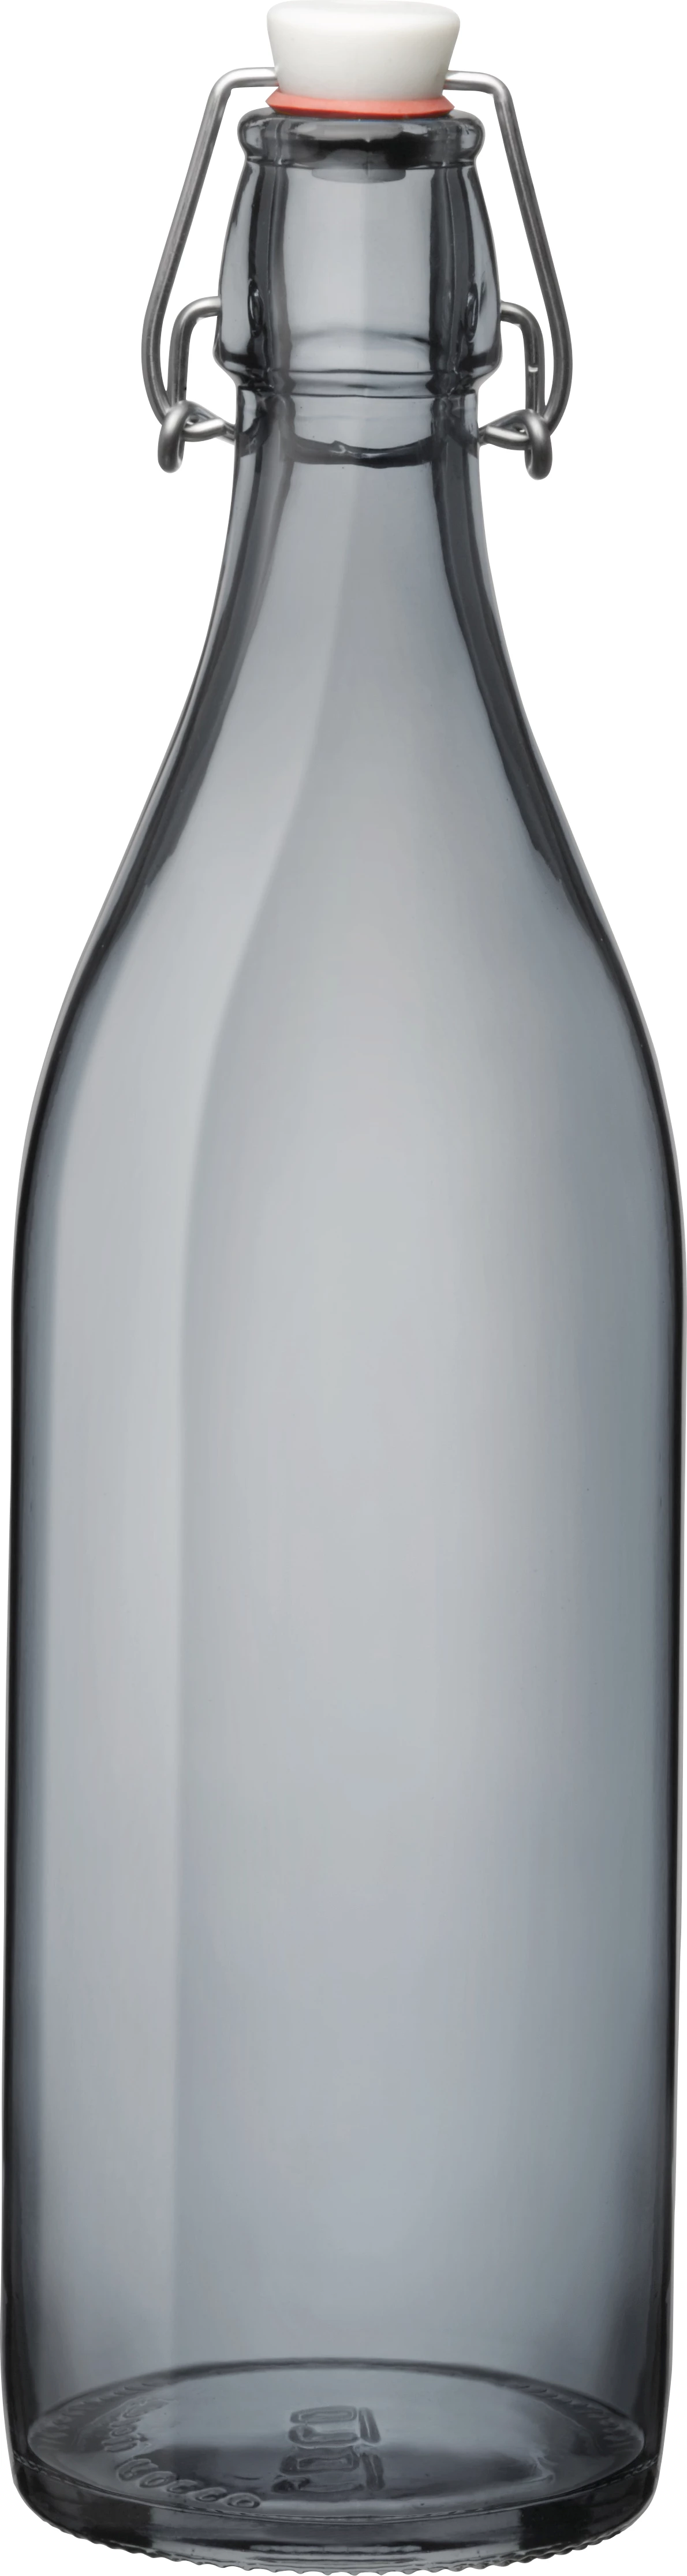 Bormioli patentflaske, grå, 1 ltr.